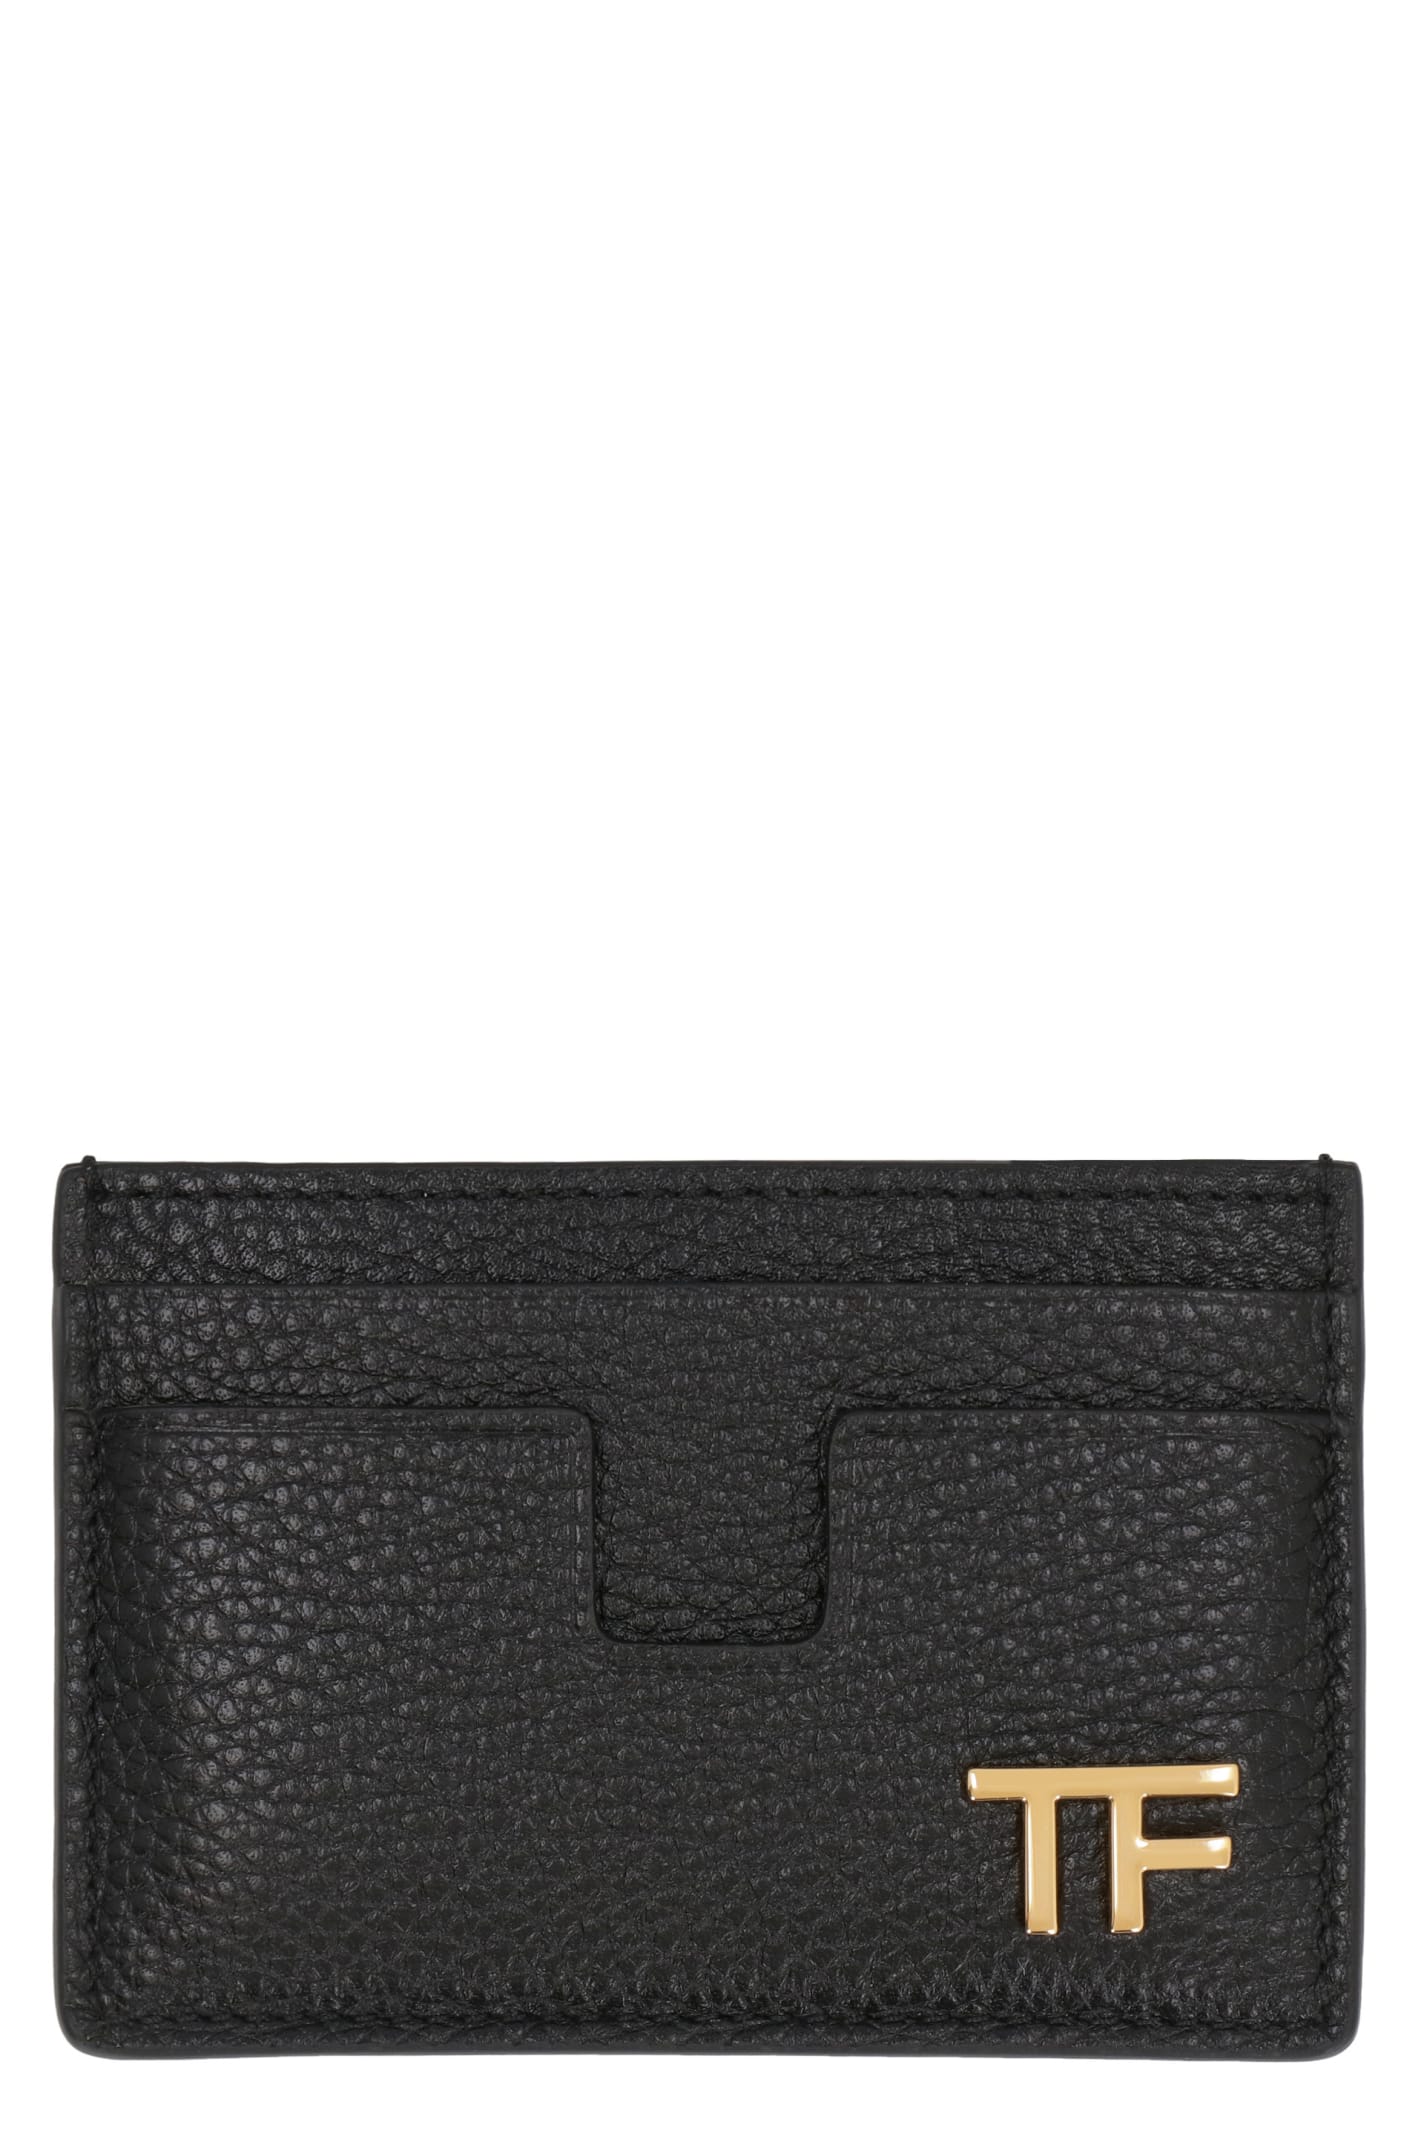 Tom Ford Pebbled Calfskin Card Holder In Black